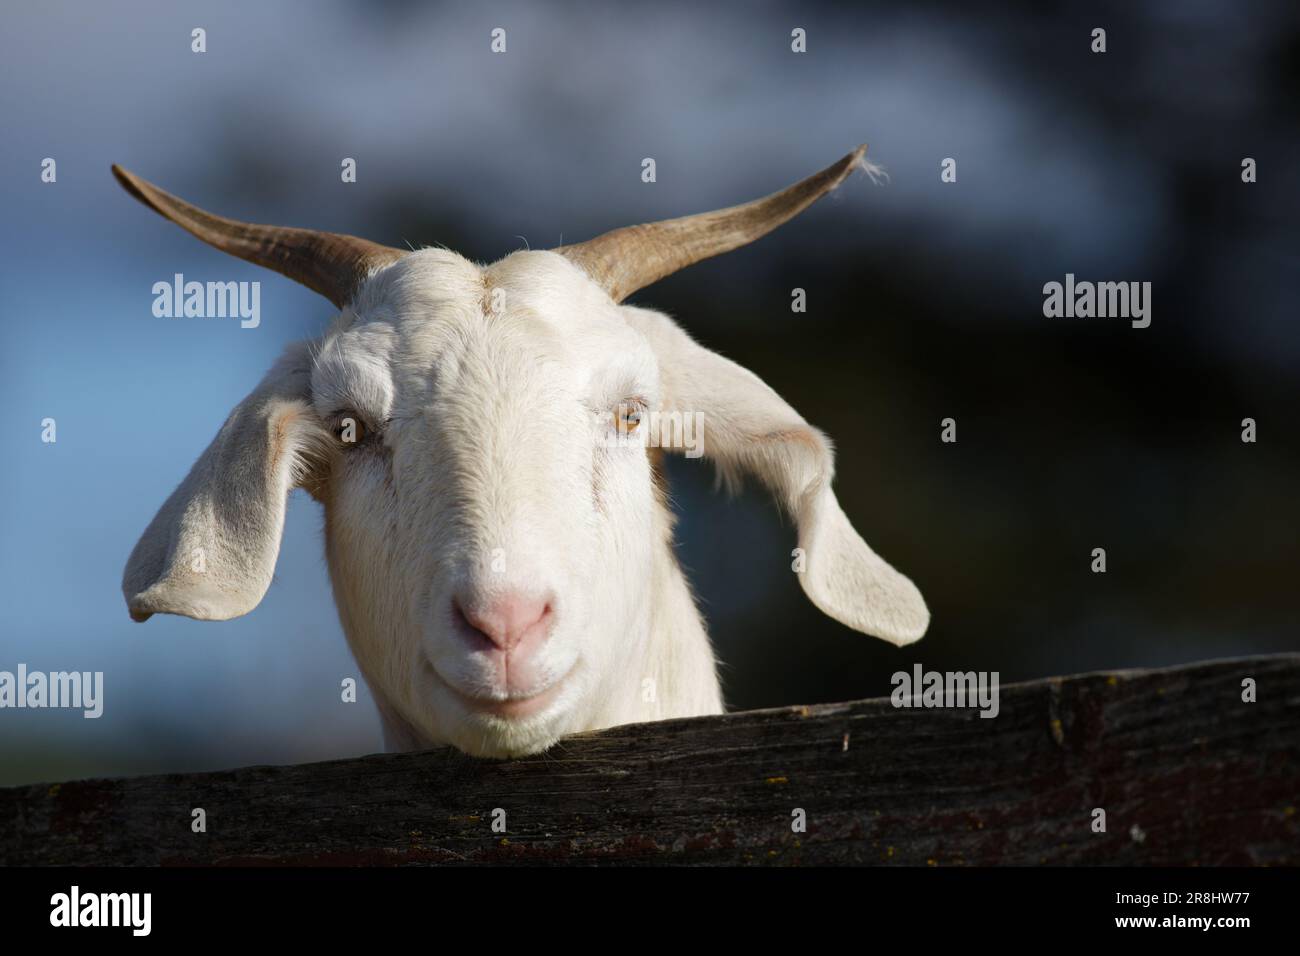 Un primo piano di una capra bianca con corna lunghe e curve, davanti a una recinzione di legno Foto Stock